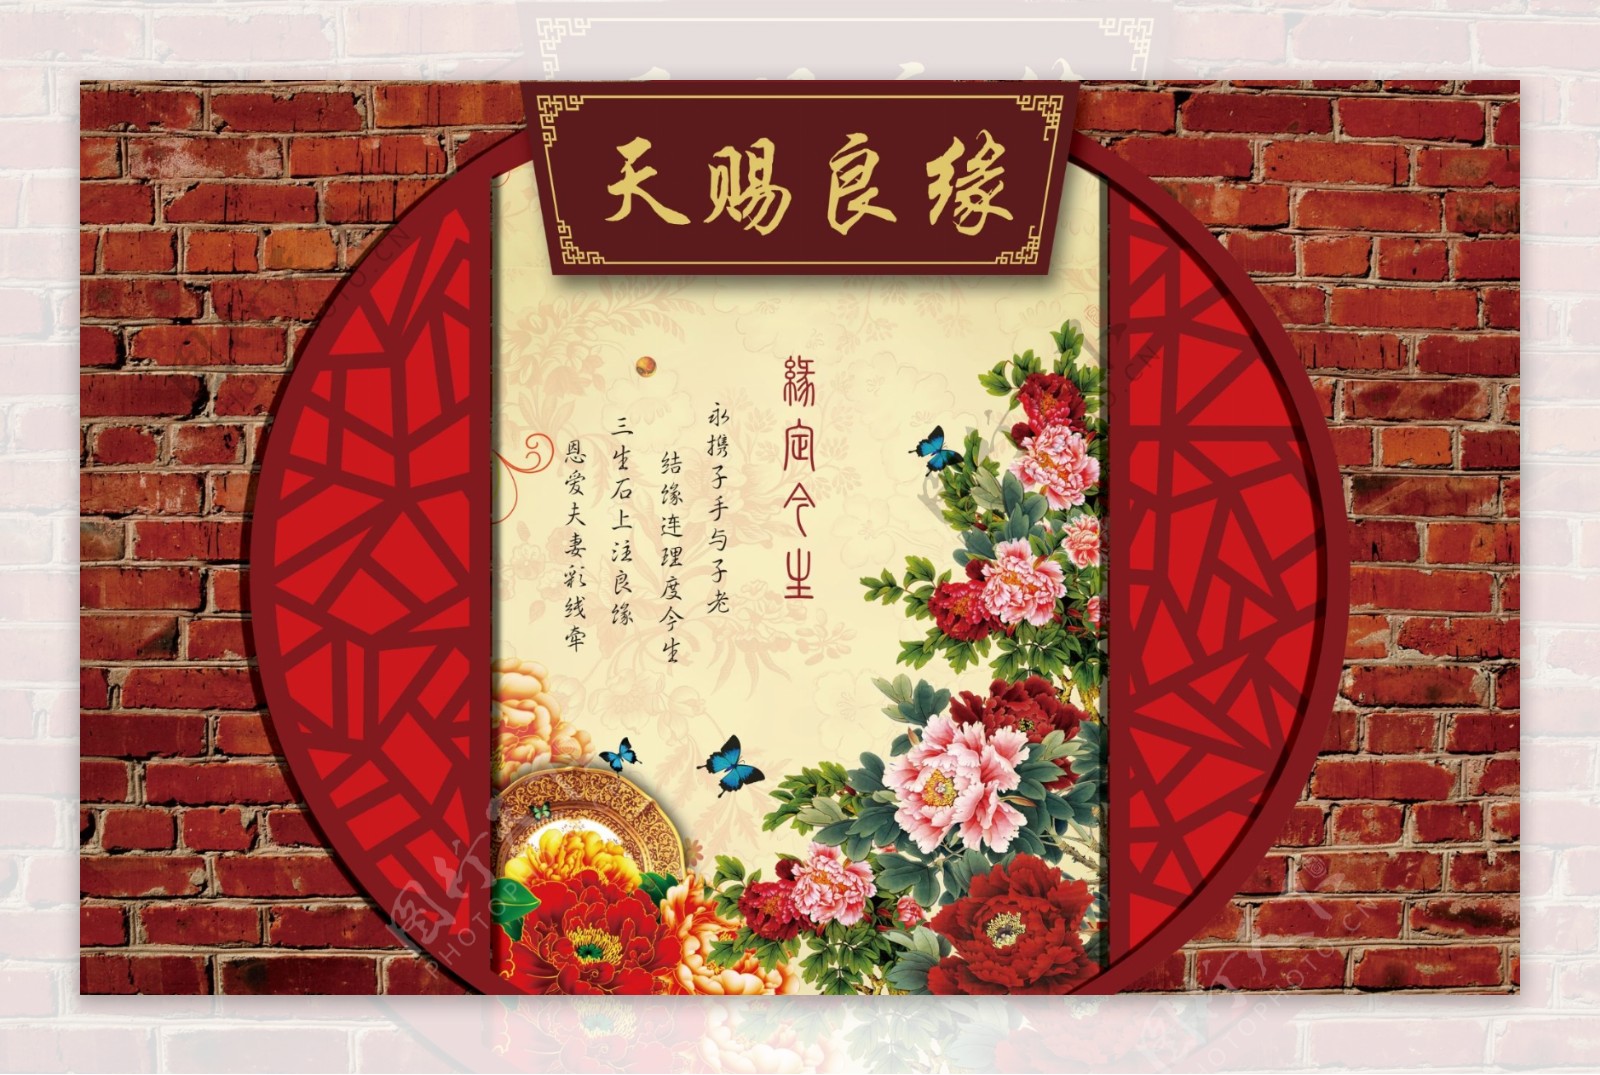 中式婚礼背景版